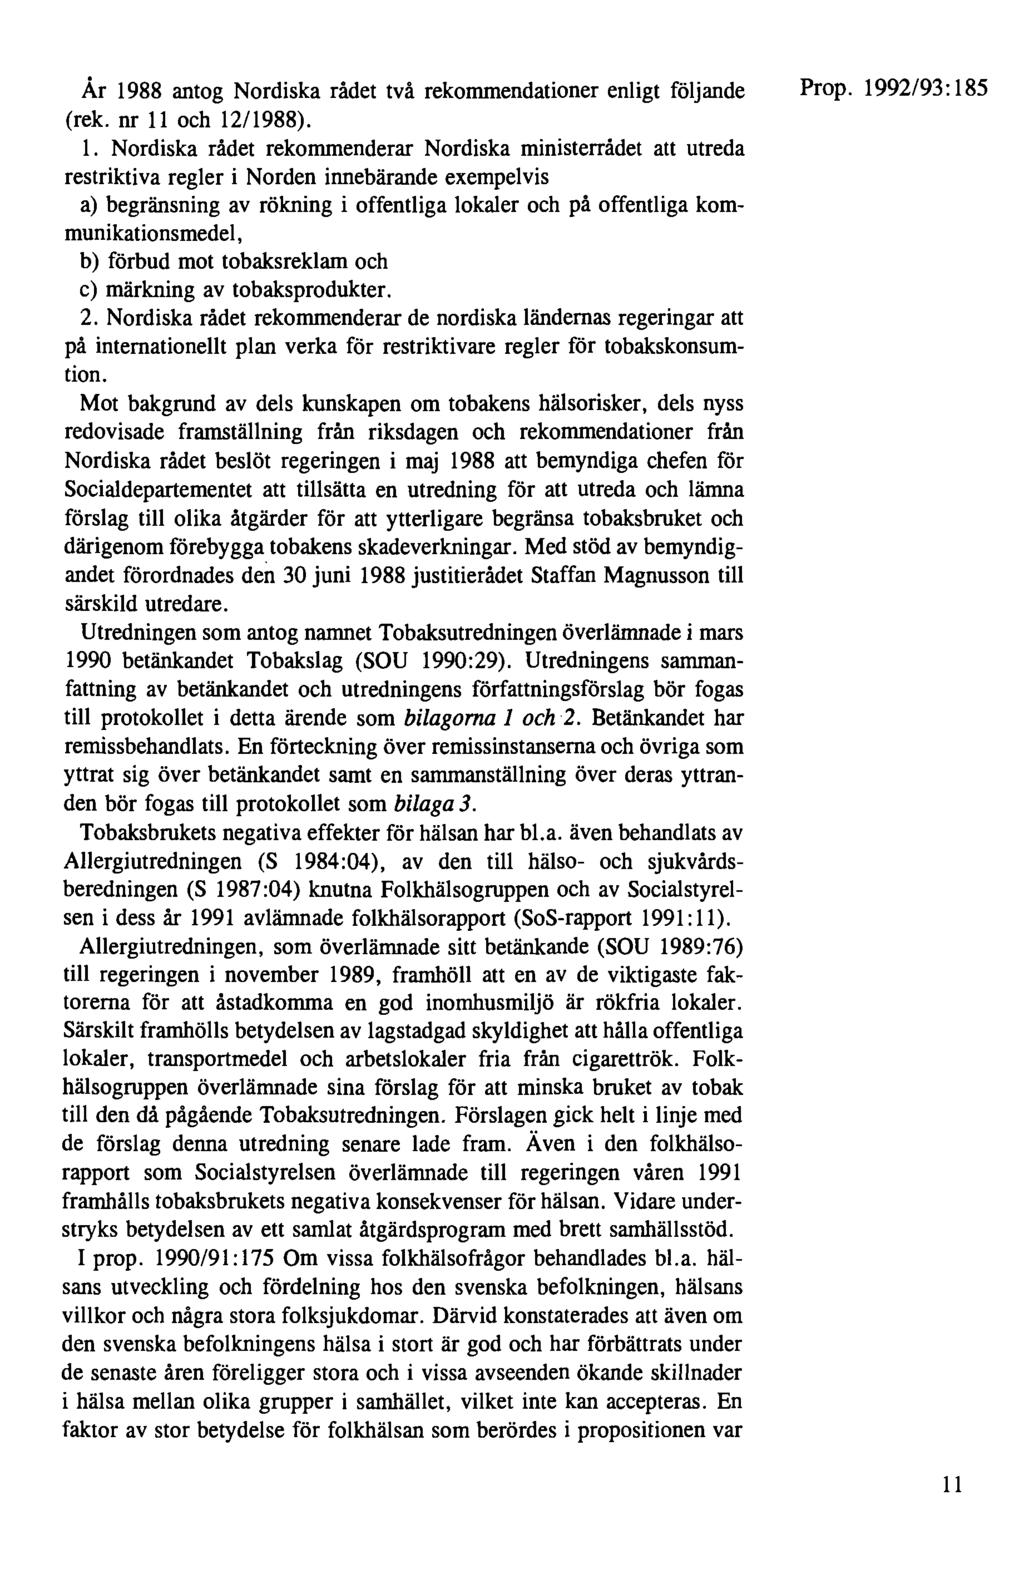 År 1988 antog Nordiska rådet två rekommendationer enligt följande (rek. nr 11 och 12/1988). 1. Nordiska rådet rekommenderar Nordiska ministerrådet att utreda restriktiva regler i Norden innebärande